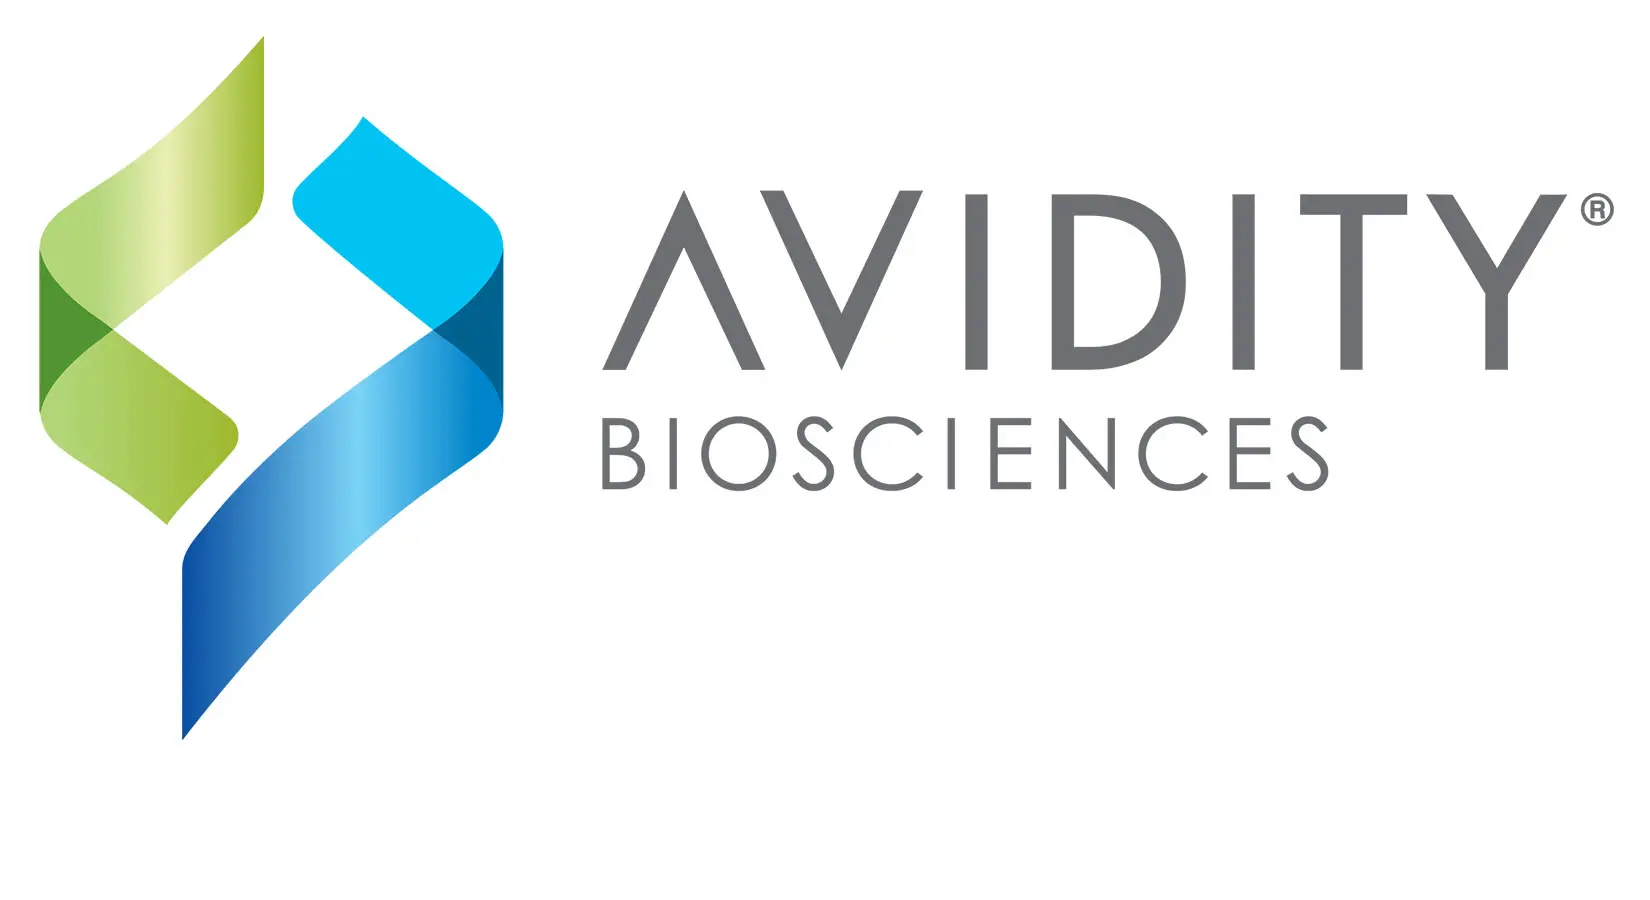 Avidity Logo